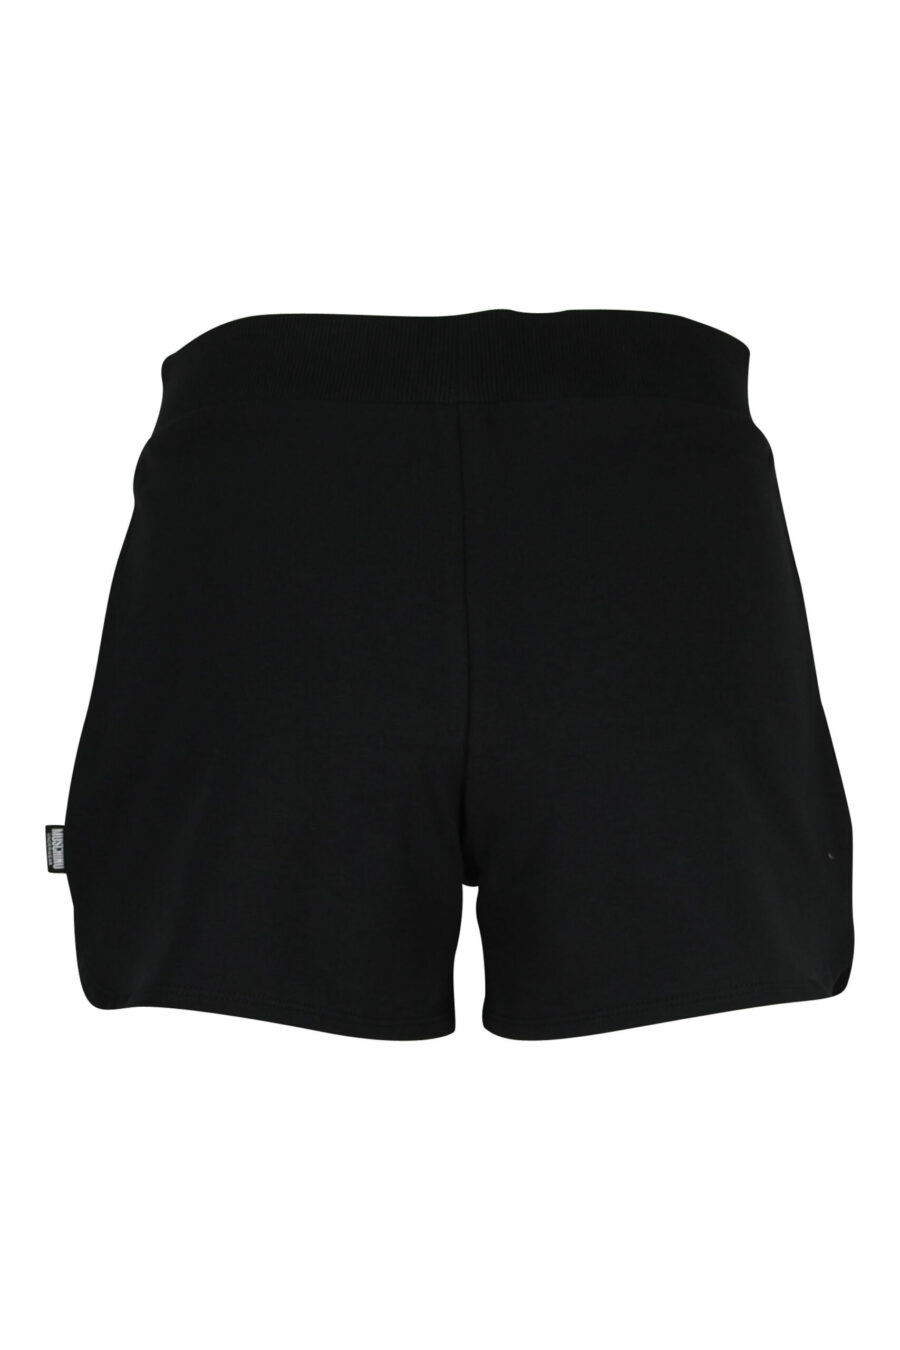 Shorts negros con minilogo oso de goma en blanco - 667113355344 1 scaled